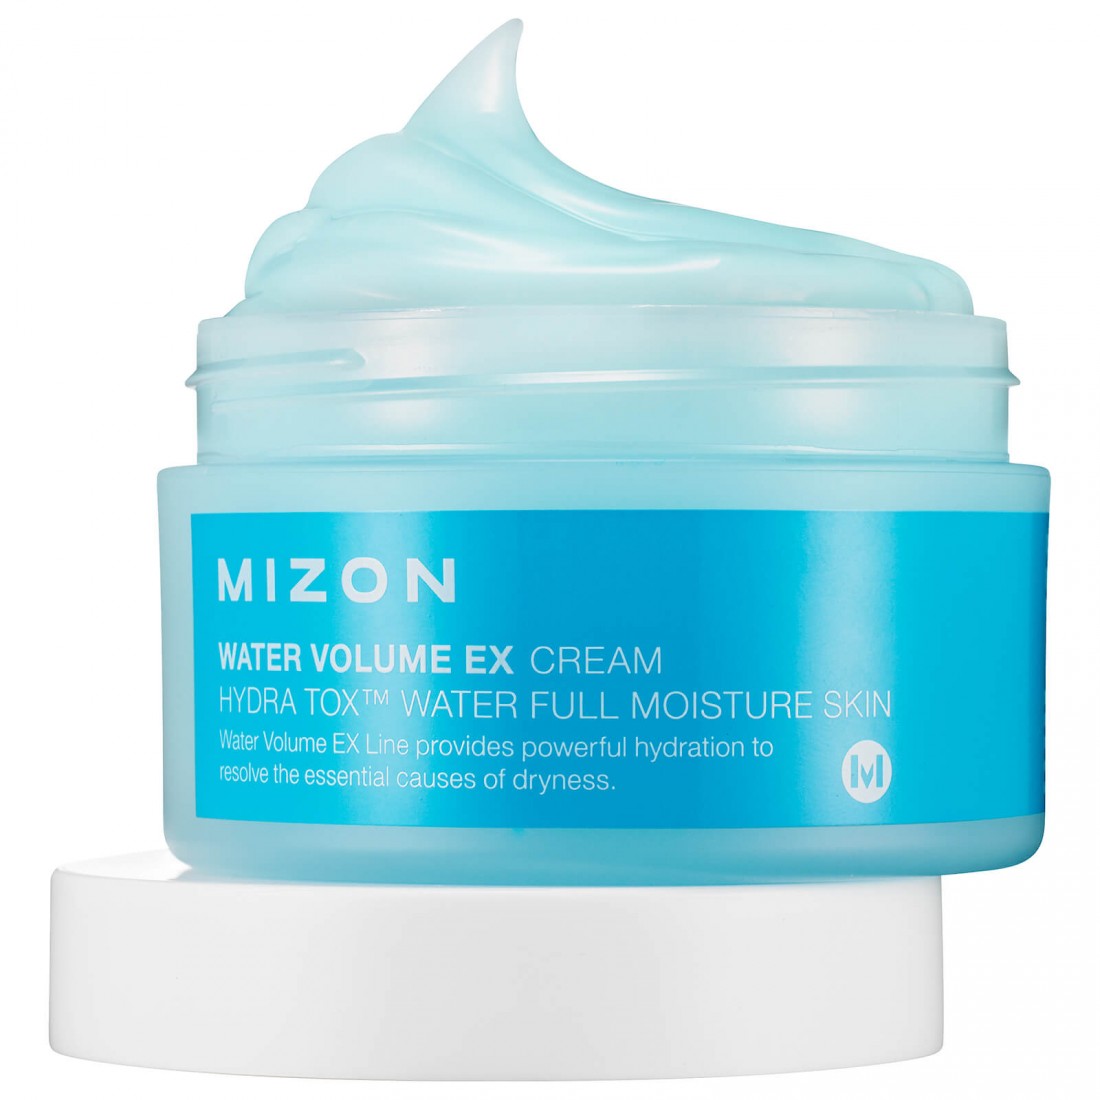 Сильно увлажняющий крем. Mizon orga-real Barrier Cream 100ml. Mizon Water Volume ex Cream. Крем увлажняющий для лица Корея Water. Mizon крем со снежными водорослями.